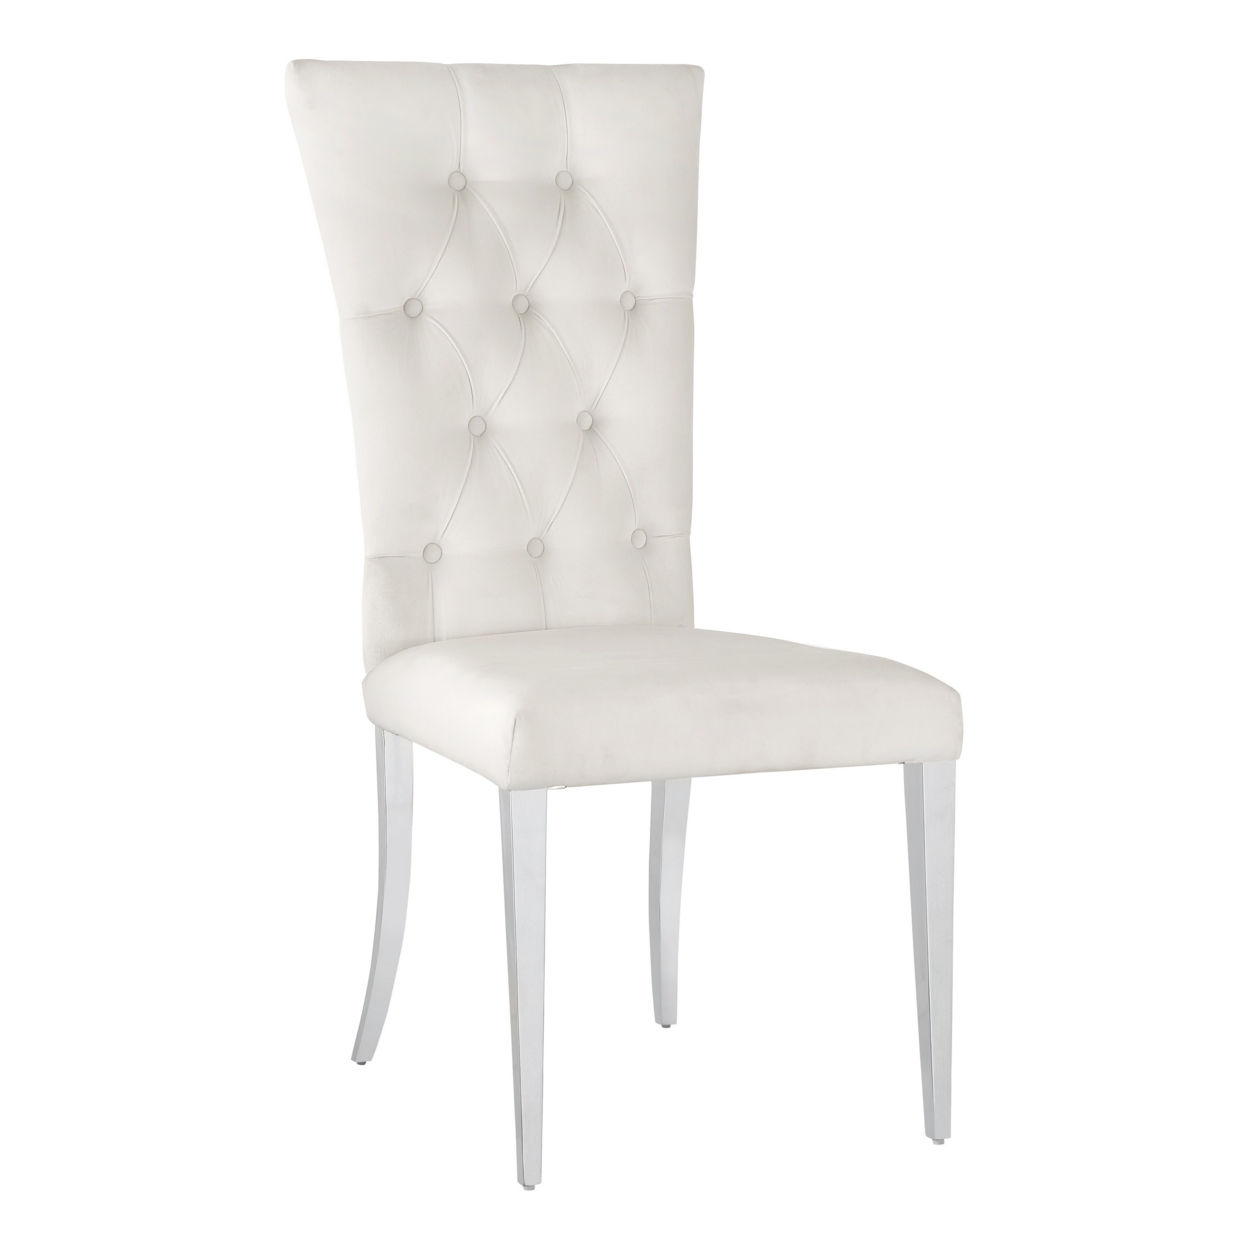 Kery 20 Inch Set Of 2 Side Chairs, White Velvet, Tall Flared Tufted Back- Saltoro Sherpi